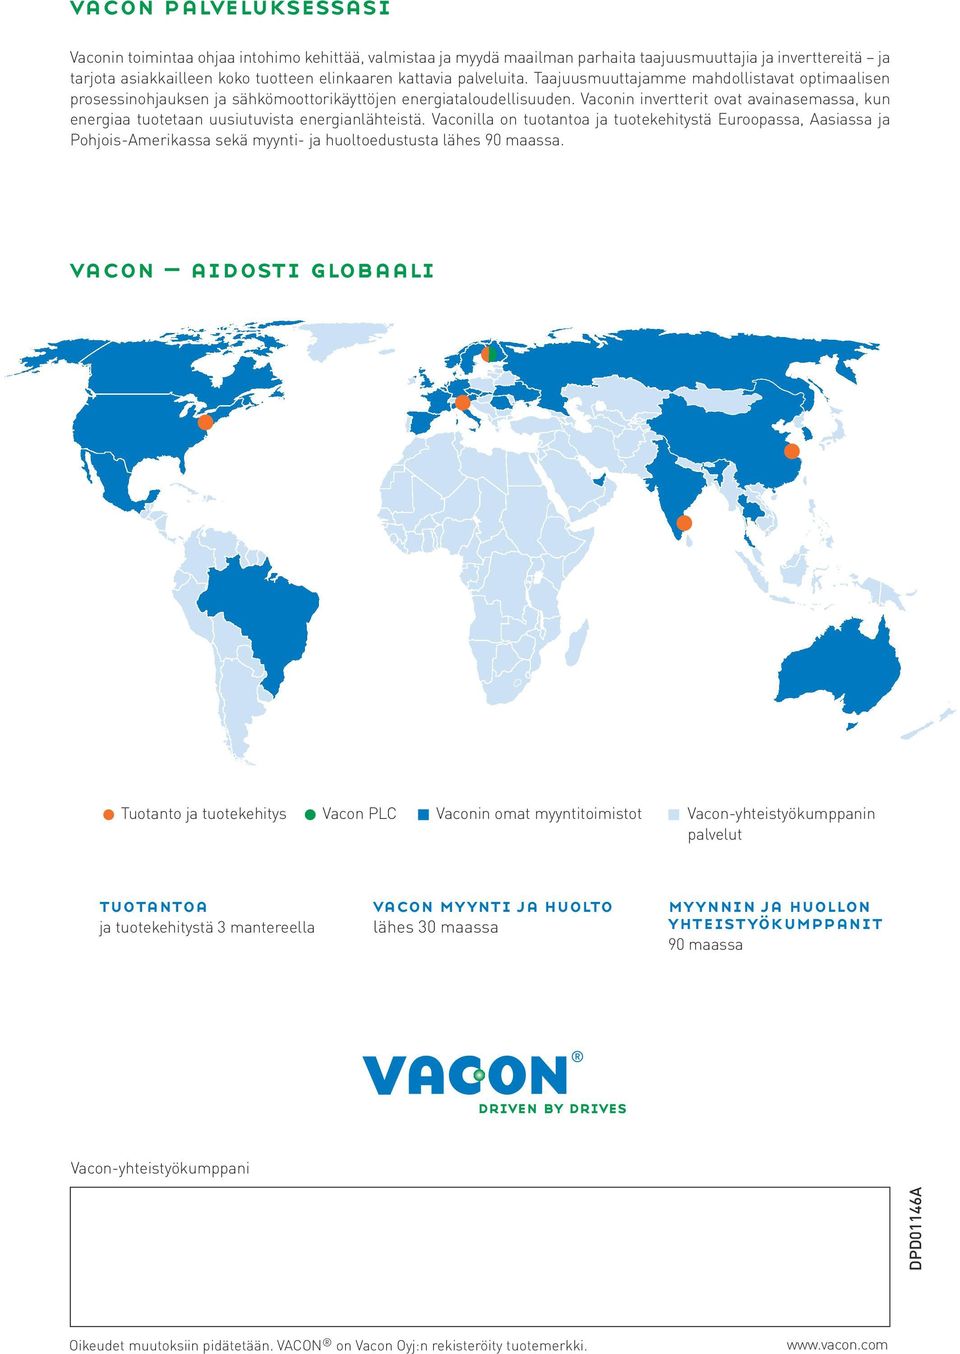 Vaconin invertterit ovat avainasemassa, kun energiaa tuotetaan uusiutuvista energianlähteistä.